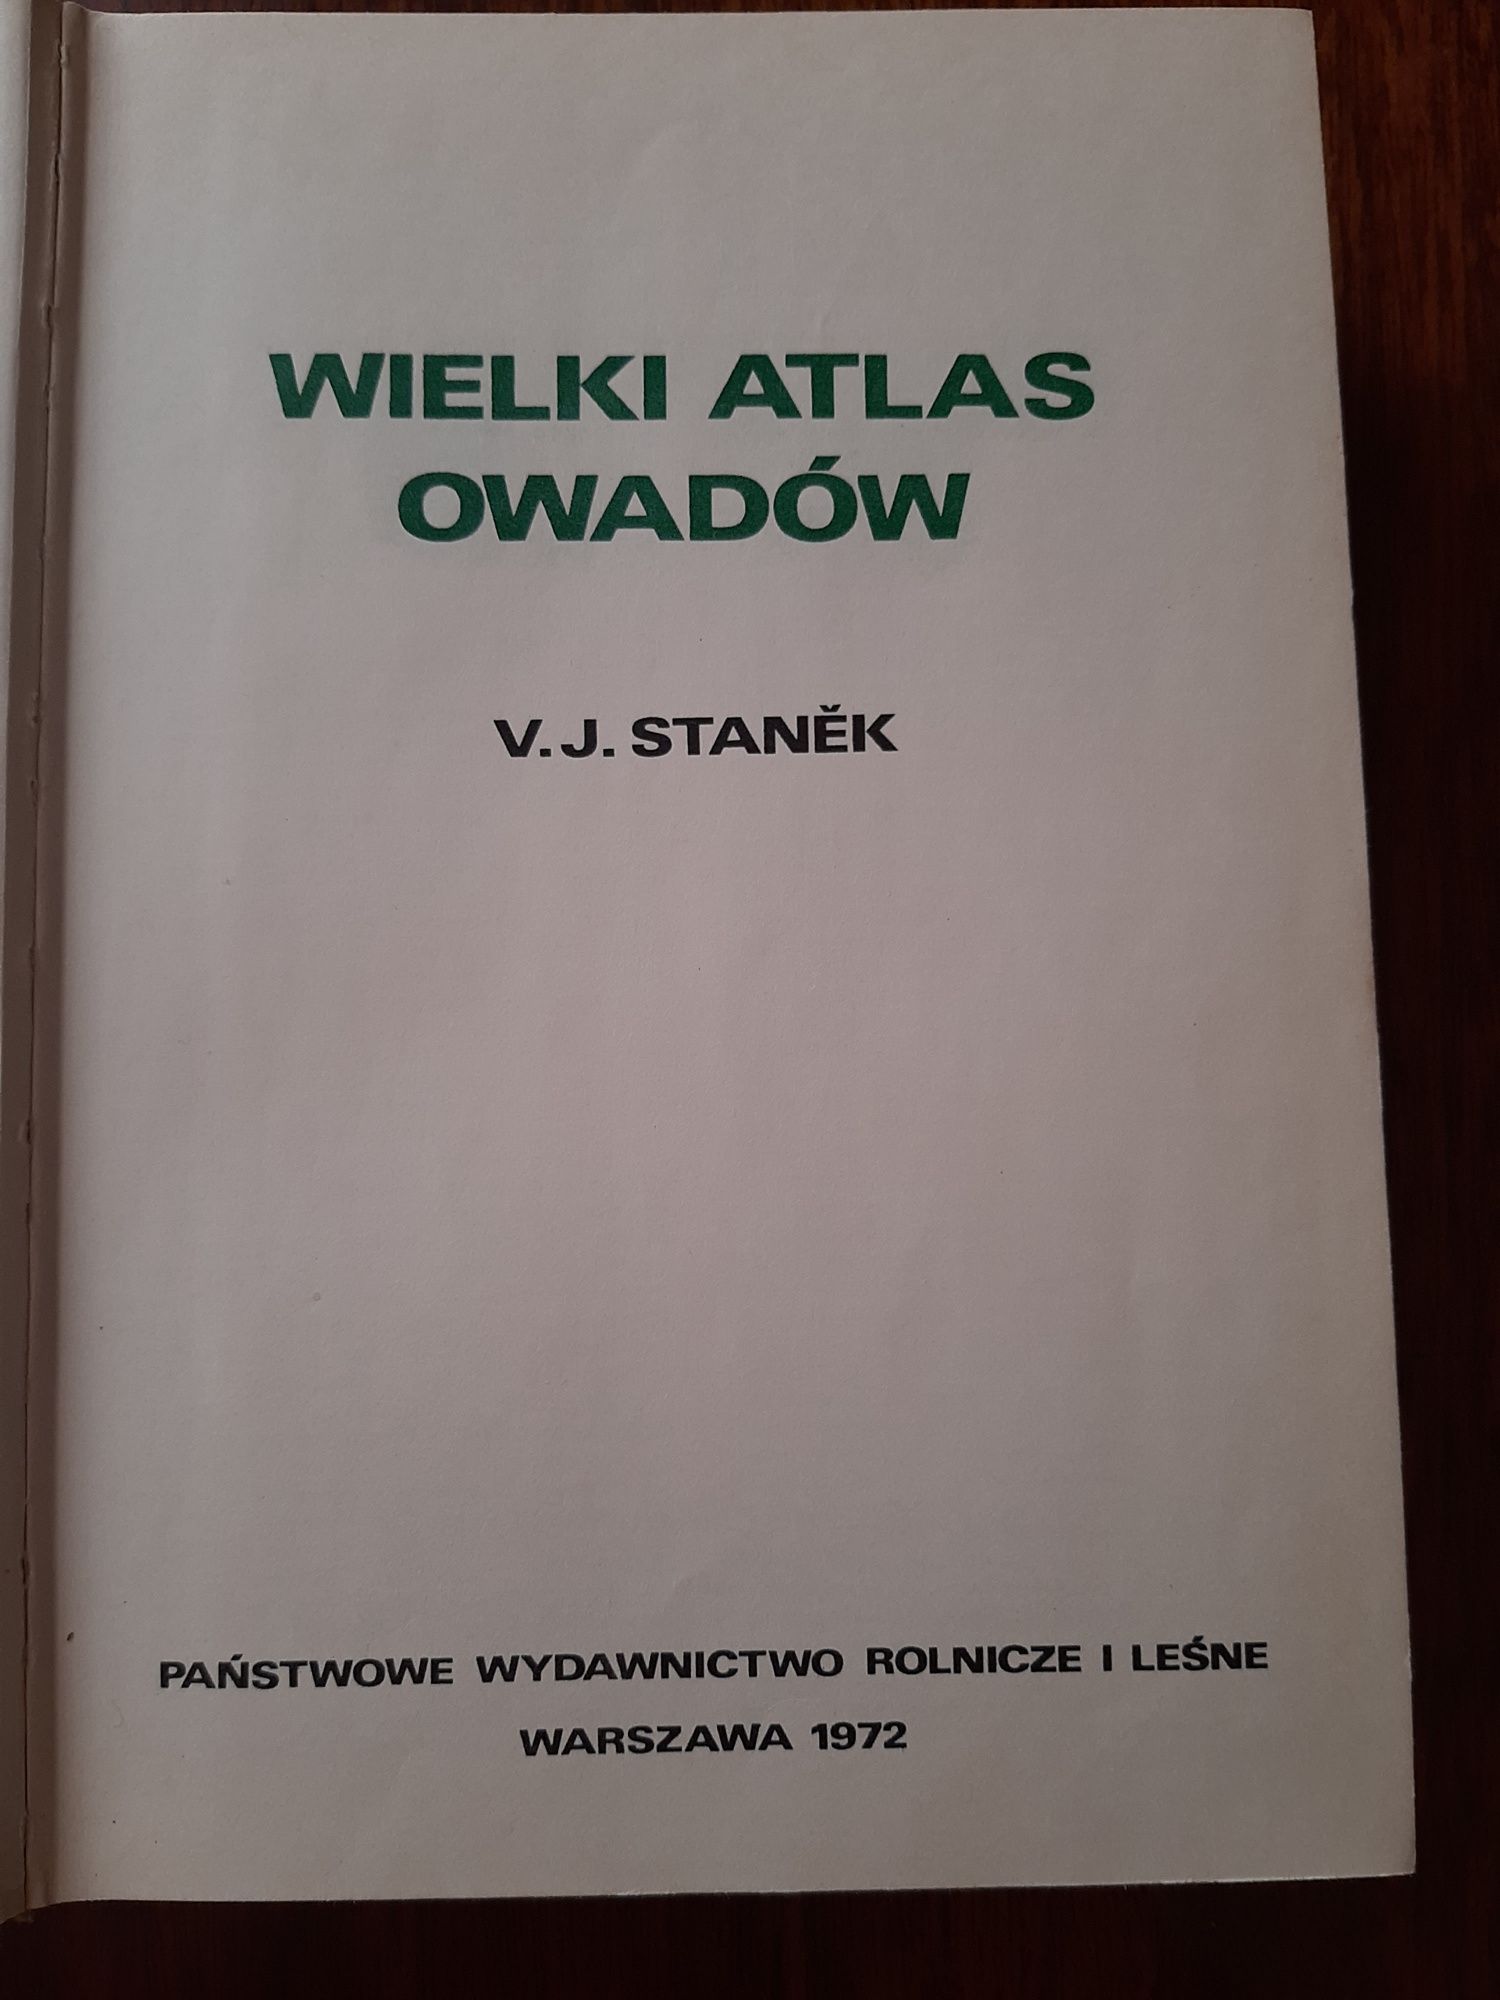 Wielki Atlas owadow.V.J.Stanek.1972.